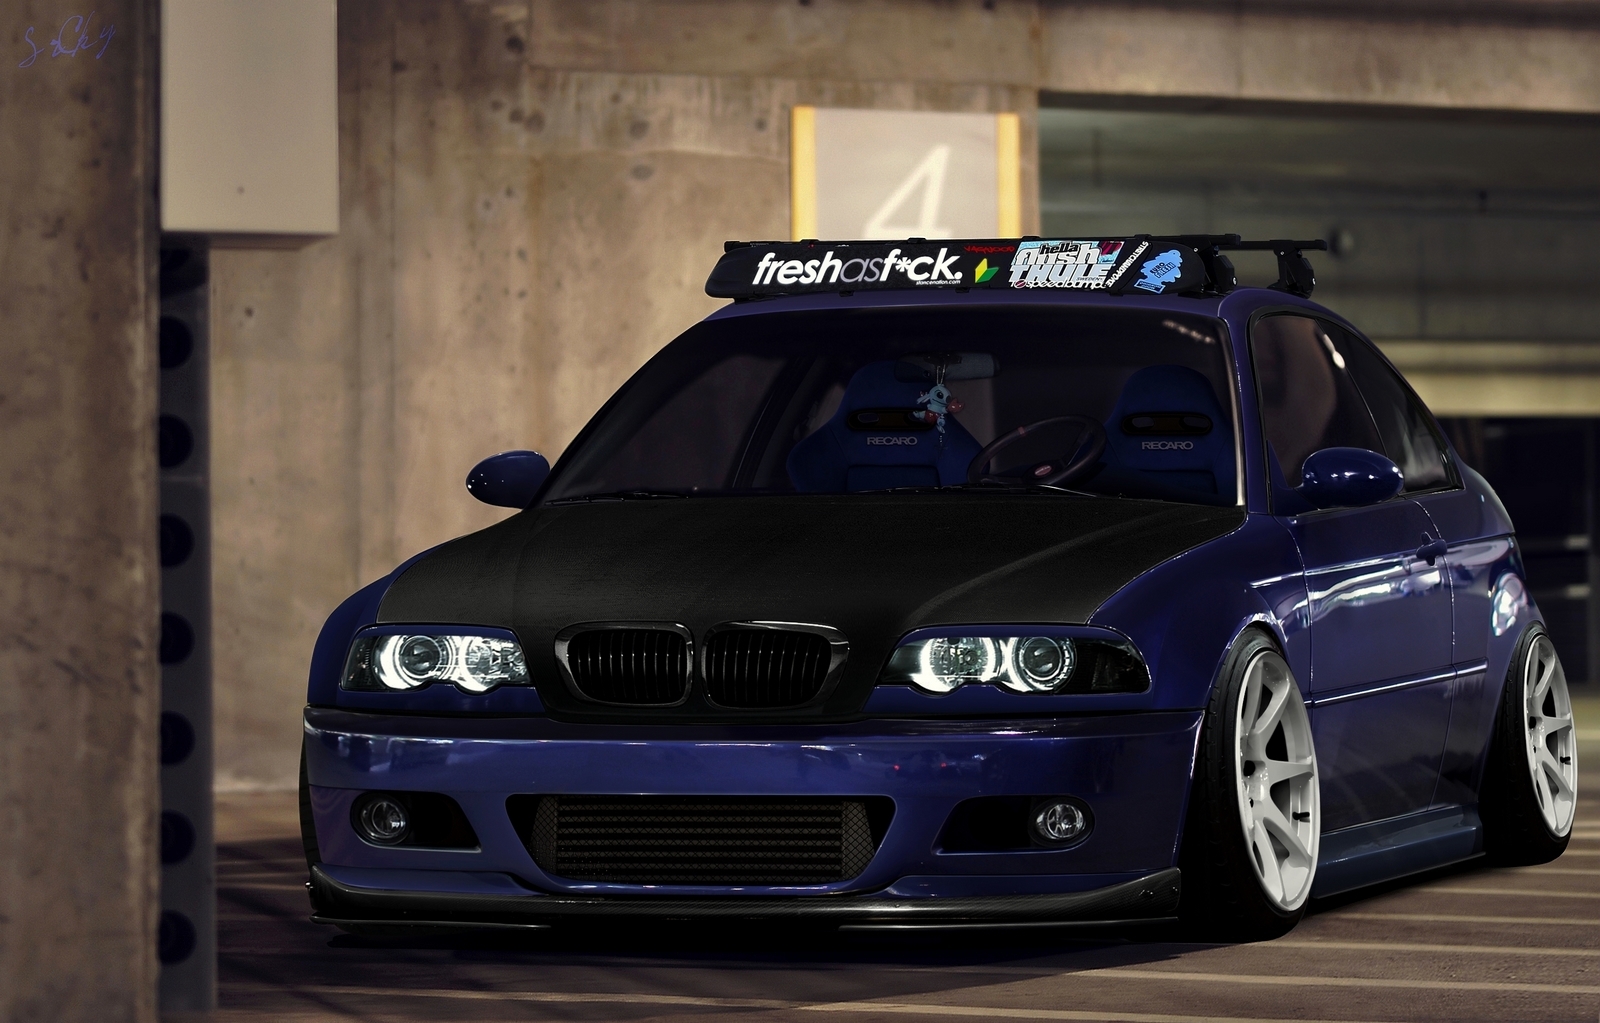 BMW_E46_Stance_by_SrCky_by_srcky.jpg